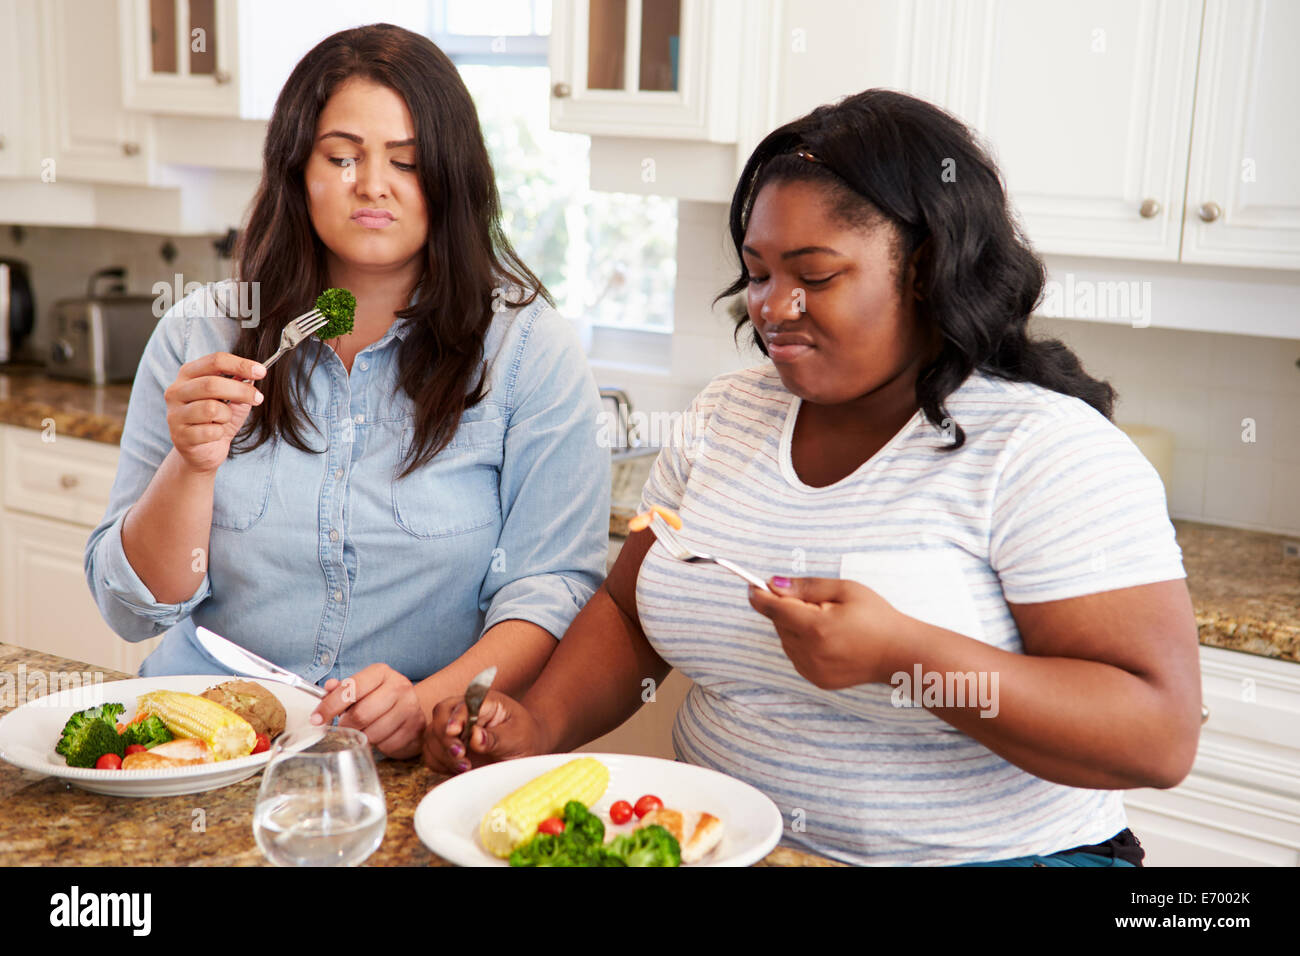 Zwei übergewichtige Frauen auf Diät gesunde Mahlzeit In der Küche Stockfoto